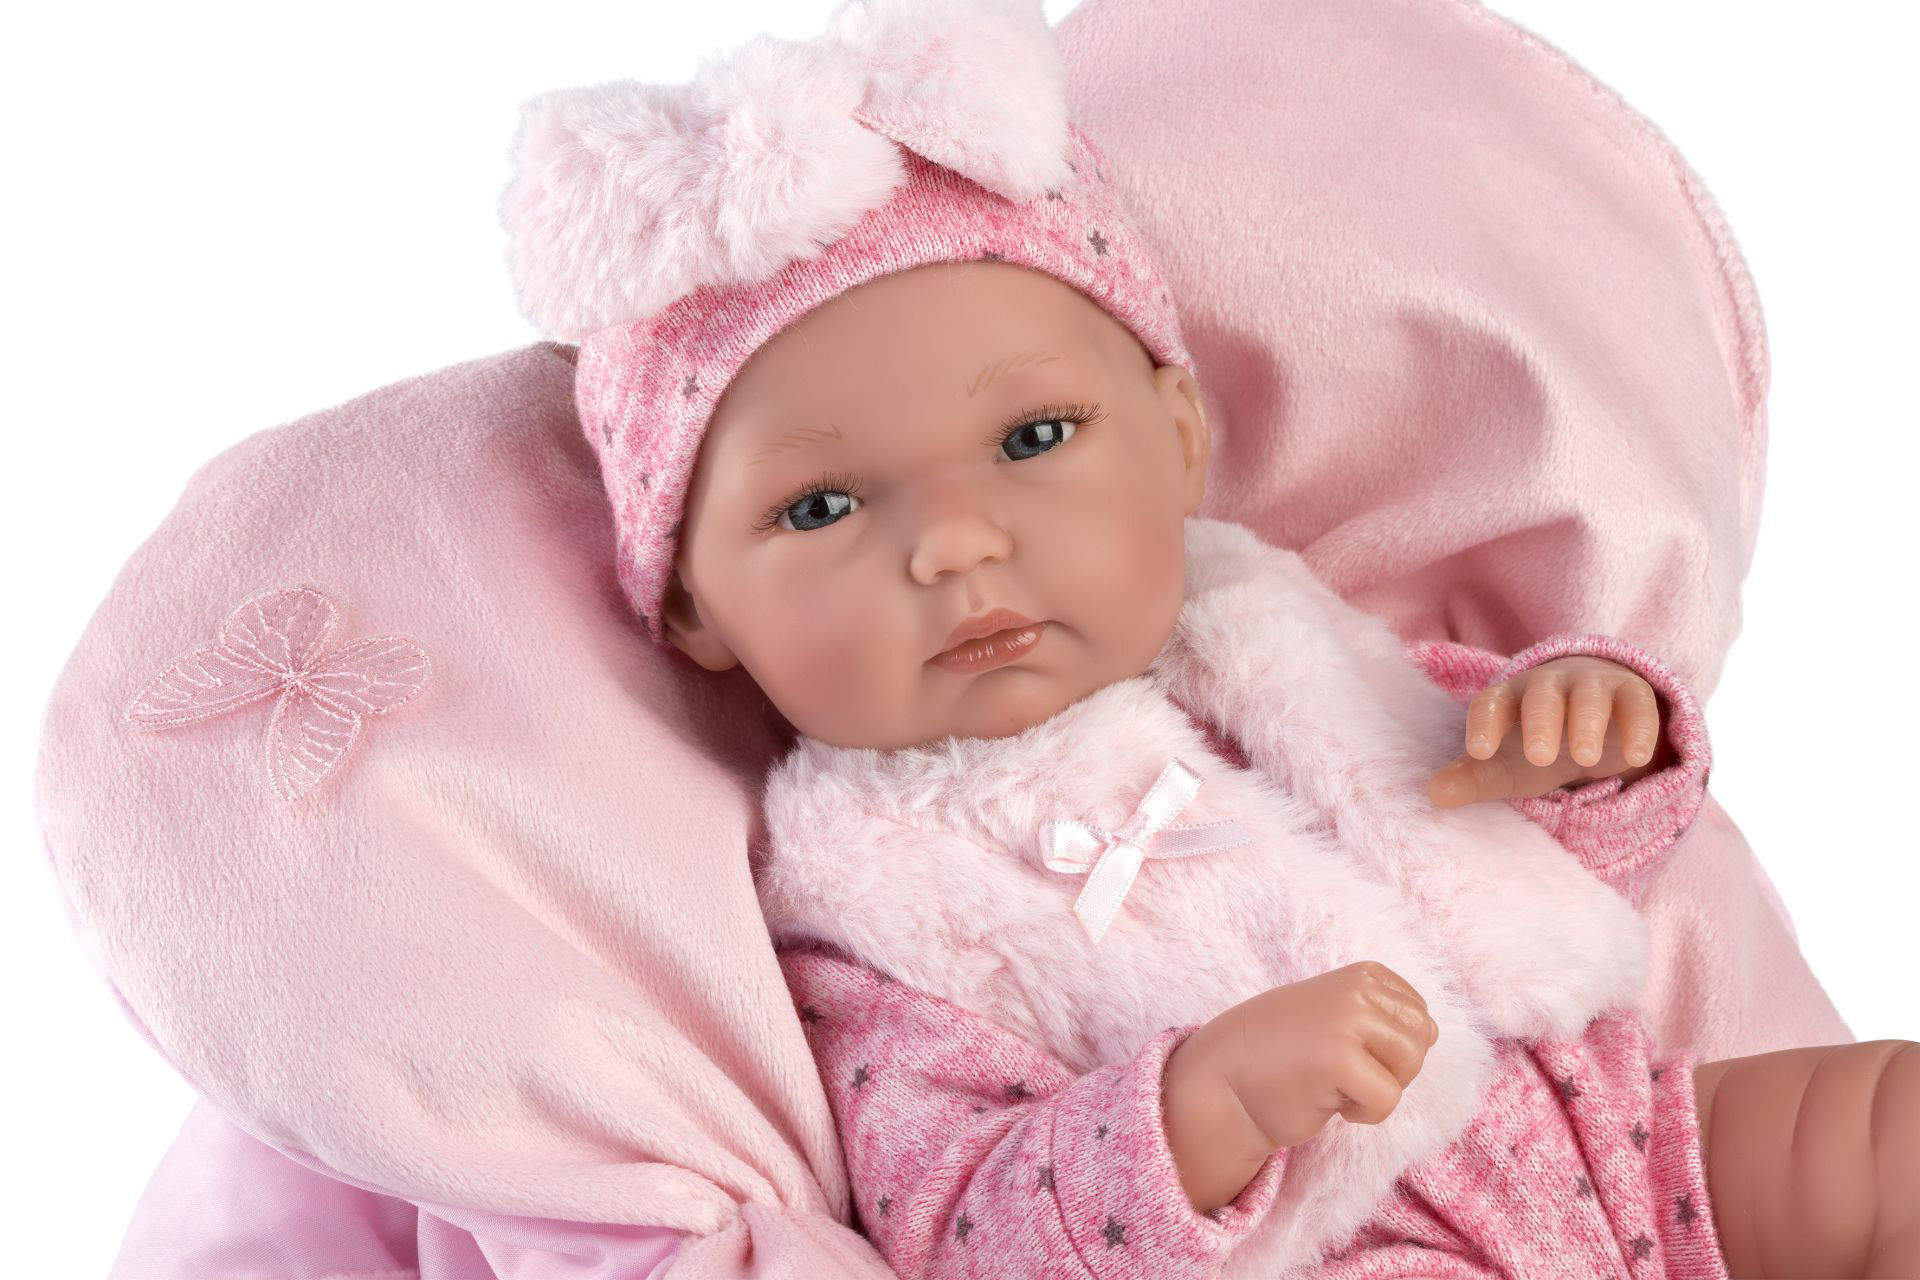 Llorens 63592 NEW BORN HOLČIČKA - realistická panenka miminko s celovinylovým tělem -35 cm